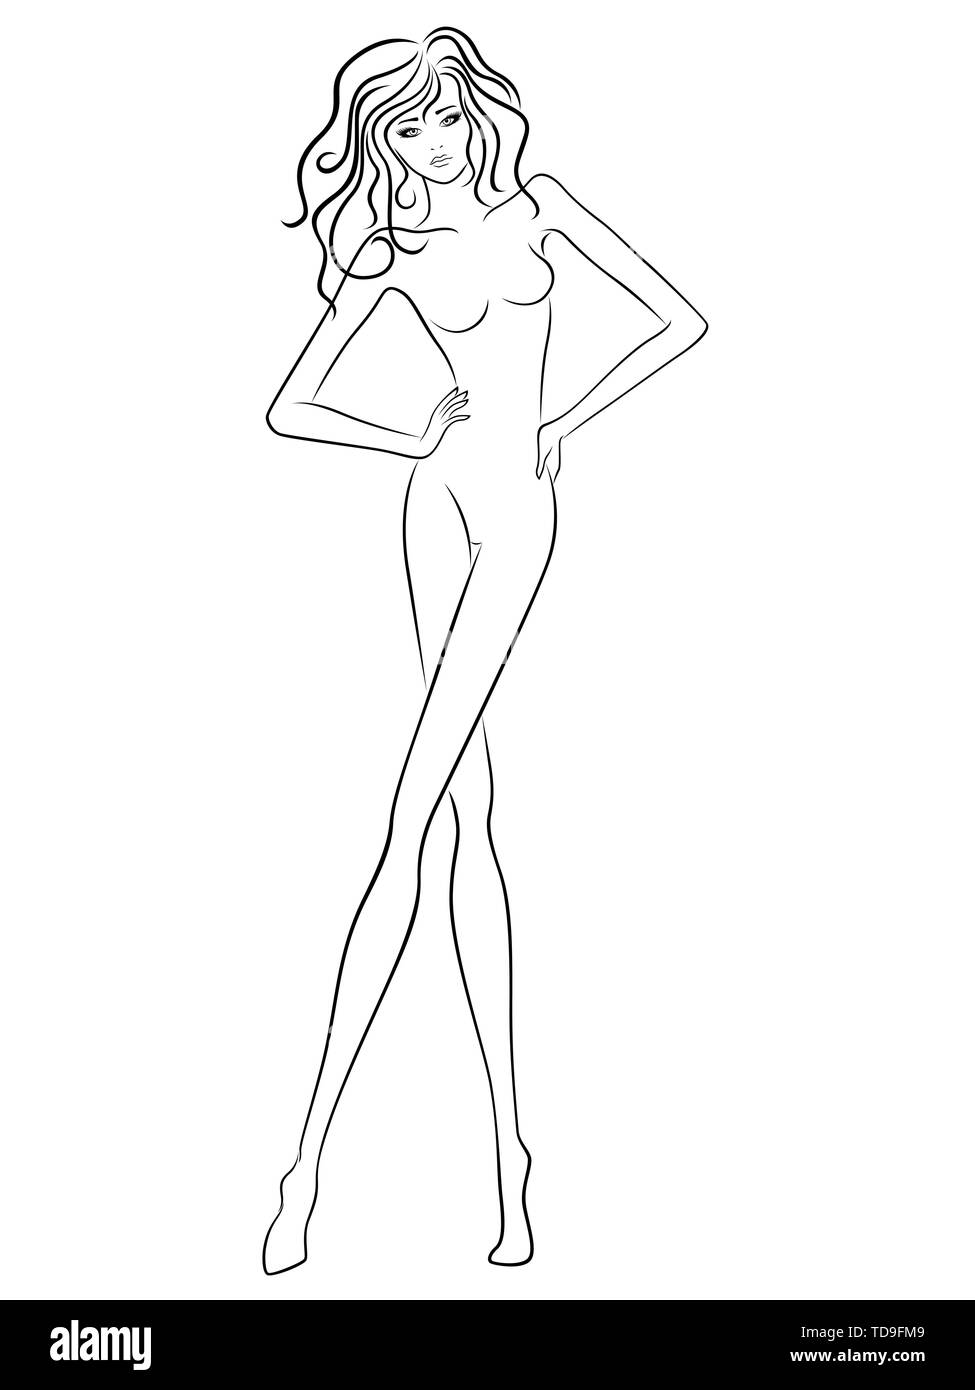 Résumé femme gracieuse avec slim figure isolé sur le fond blanc, dessin à la main contour vectoriel Illustration de Vecteur